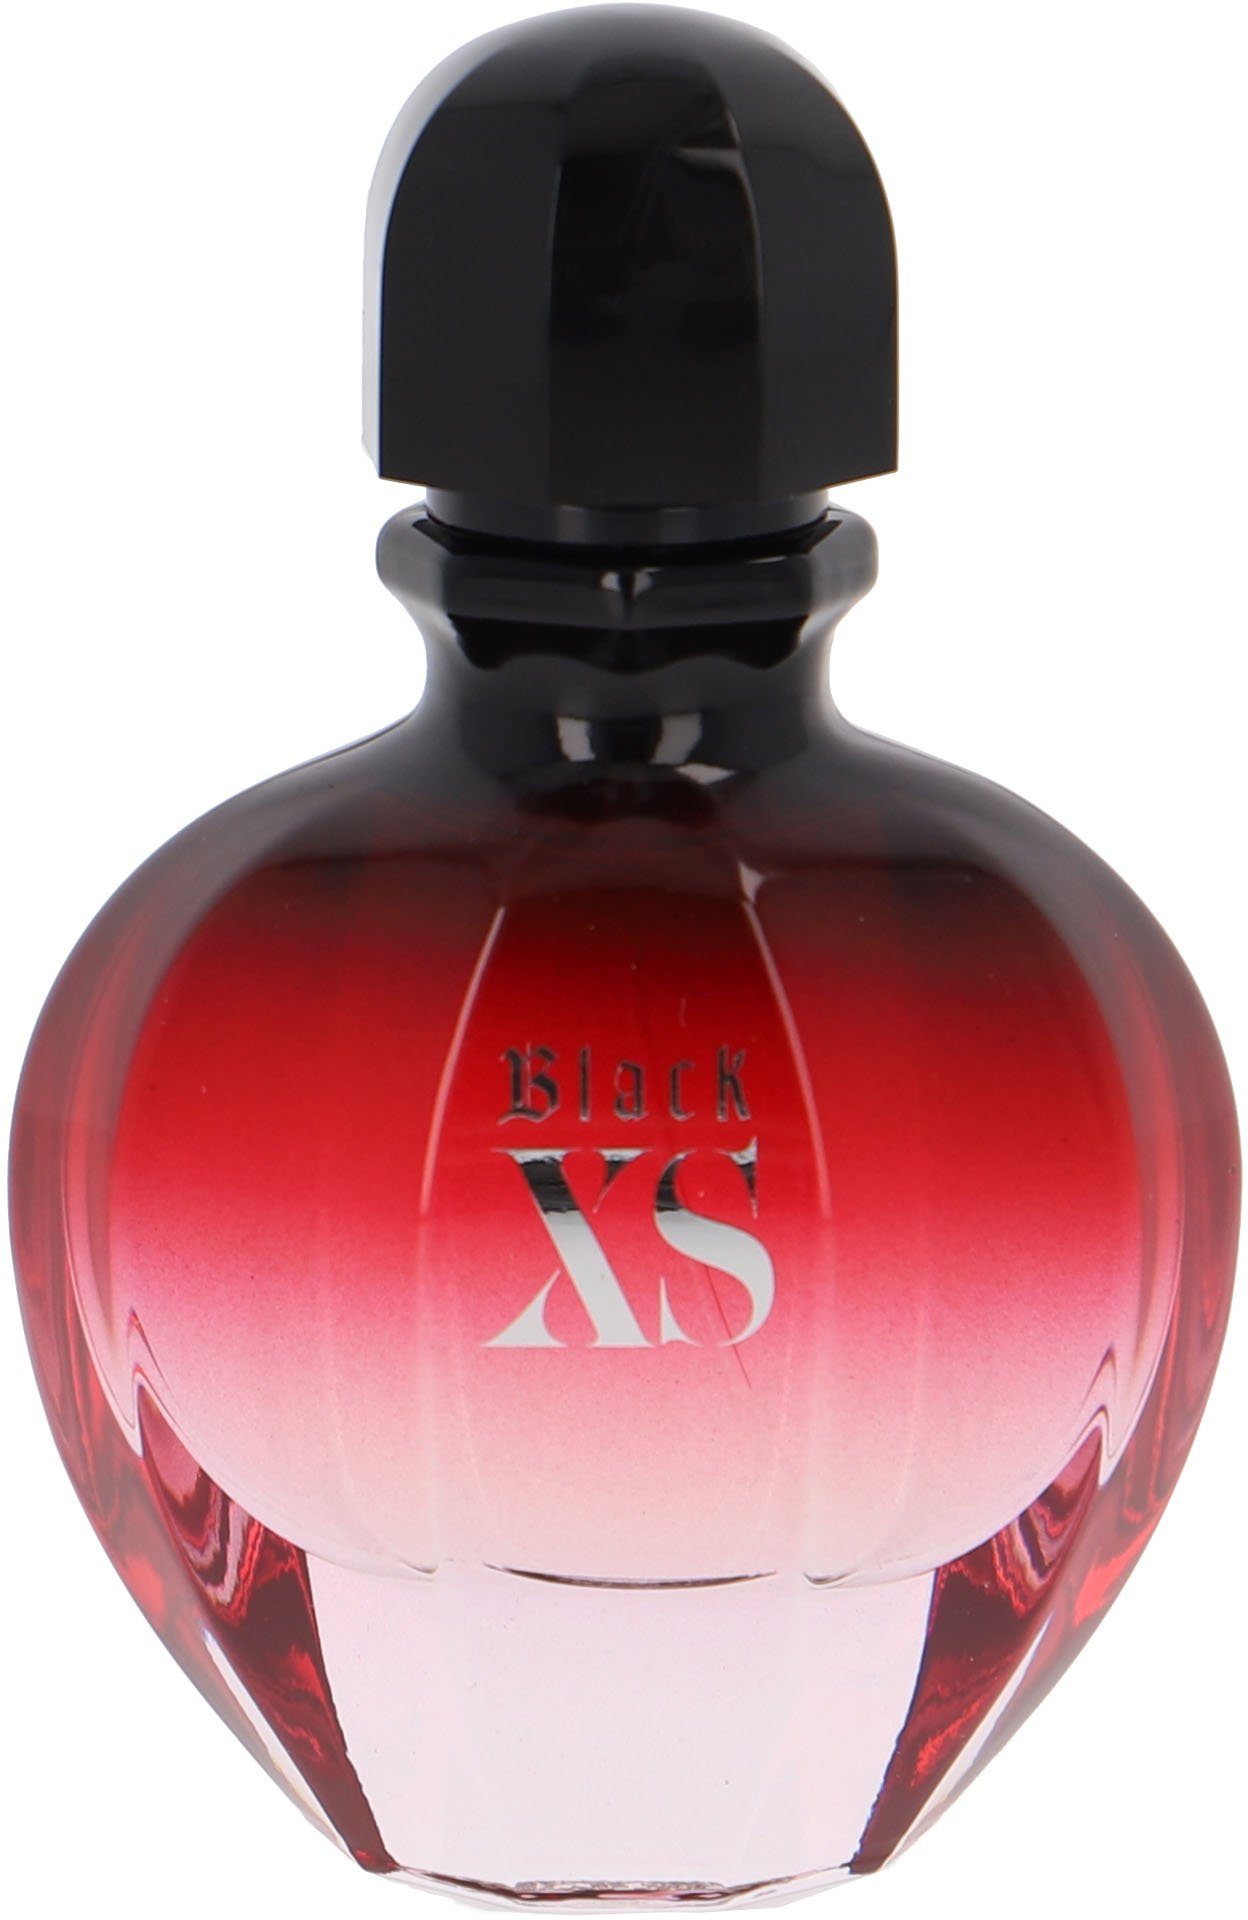 Super meistverkaufte Produkte de Black Elle Eau XS Parfum rabanne paco